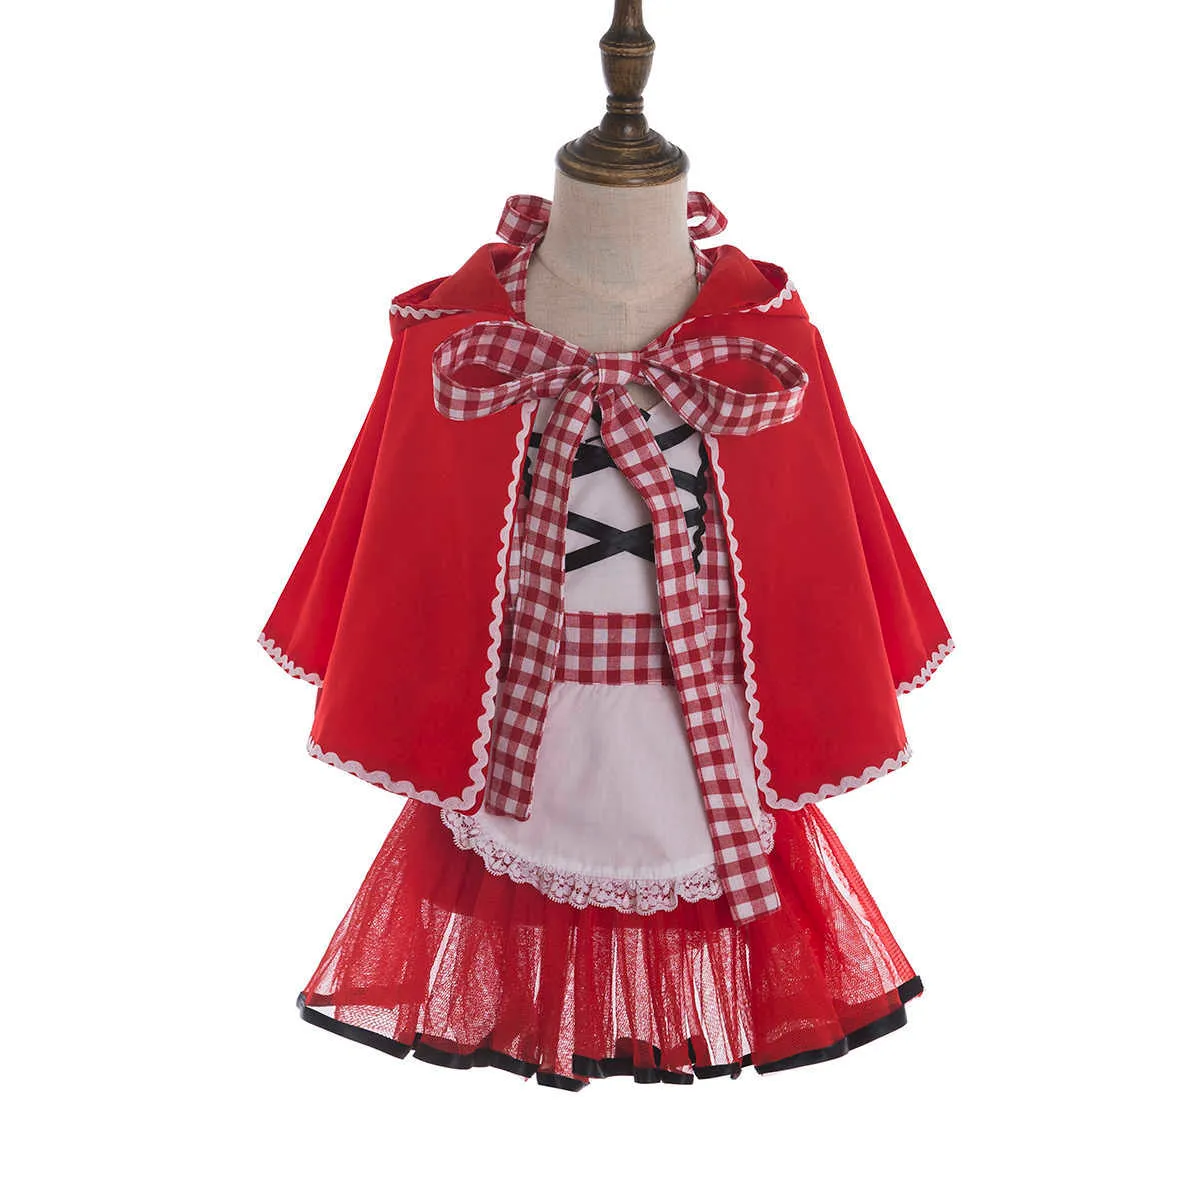 Mały czerwony kaptur Cosplay kostium dla dzieci sukienkę Halloween karnawał Fantasia Party Girls Fantasia Dress Dress Party G10269401667